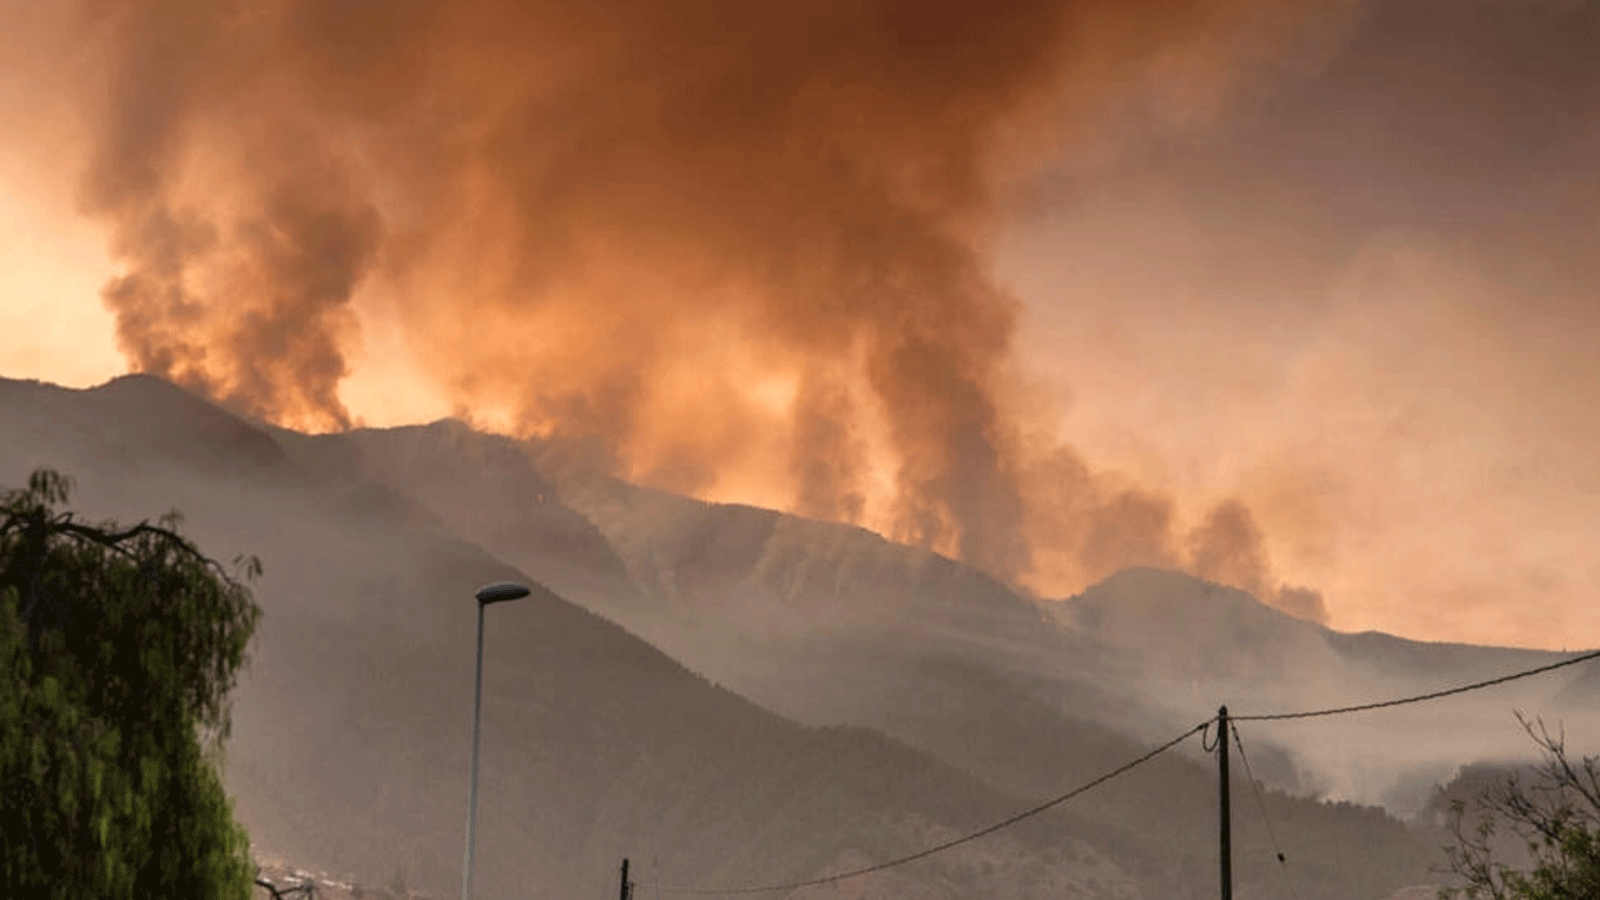 الحريق حتى الآن أكثر من 3200 هكتار (7900 فدان) من الأرض